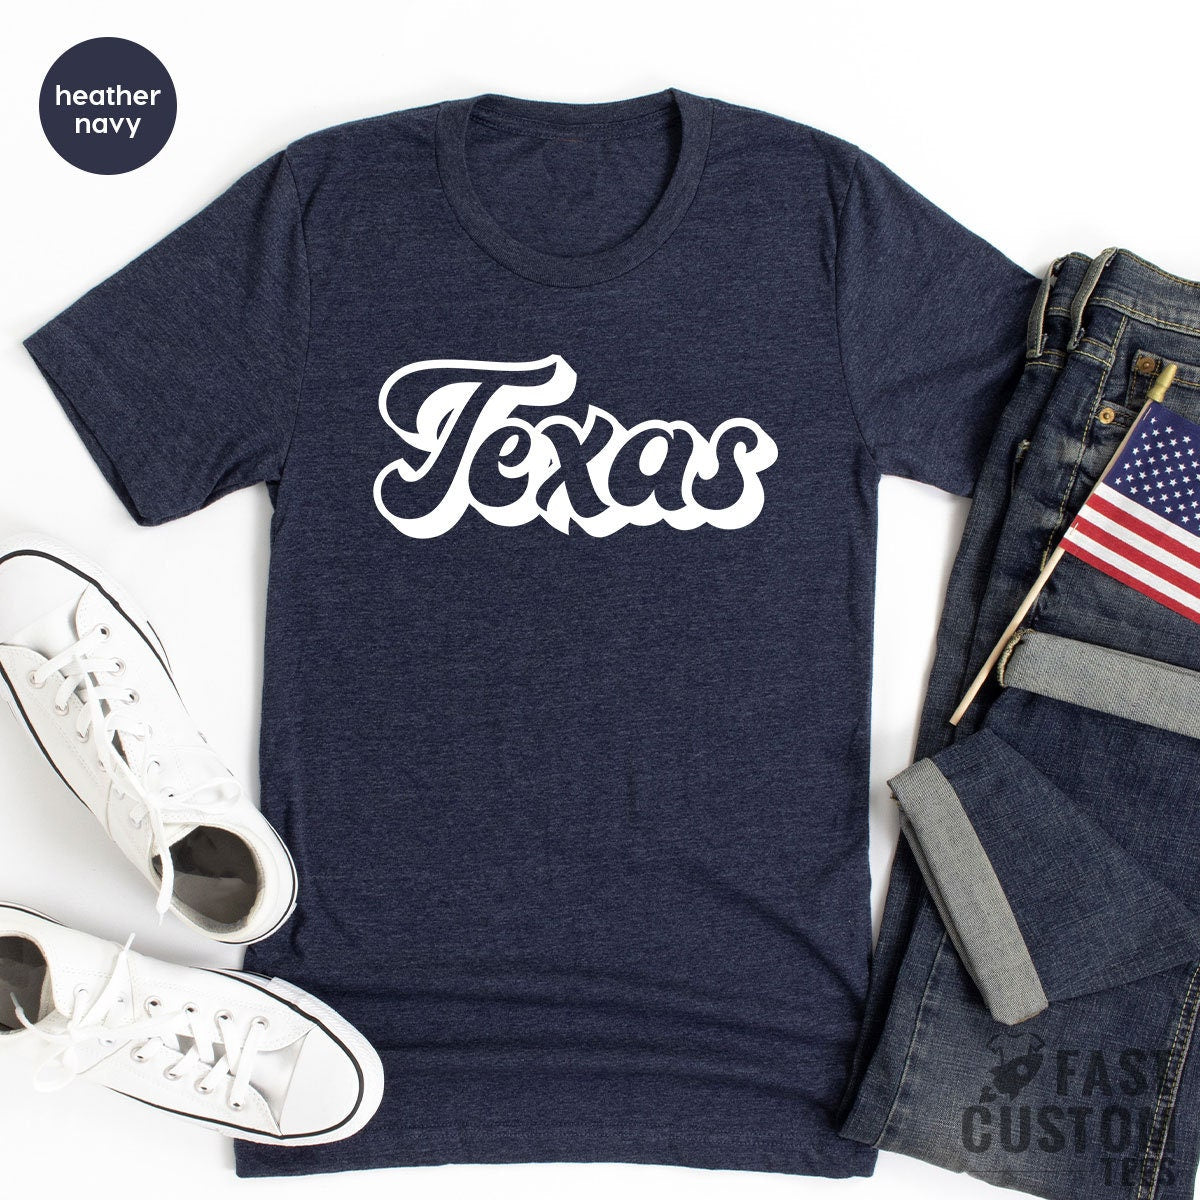 Texas TShirt, Texas Tee, Texas City Shirts, Texas State T Shirt, Texas Lover Gift, Texas Home T-shirt, Texas T shirt, Texas Lover Shirt - Fastdeliverytees.com